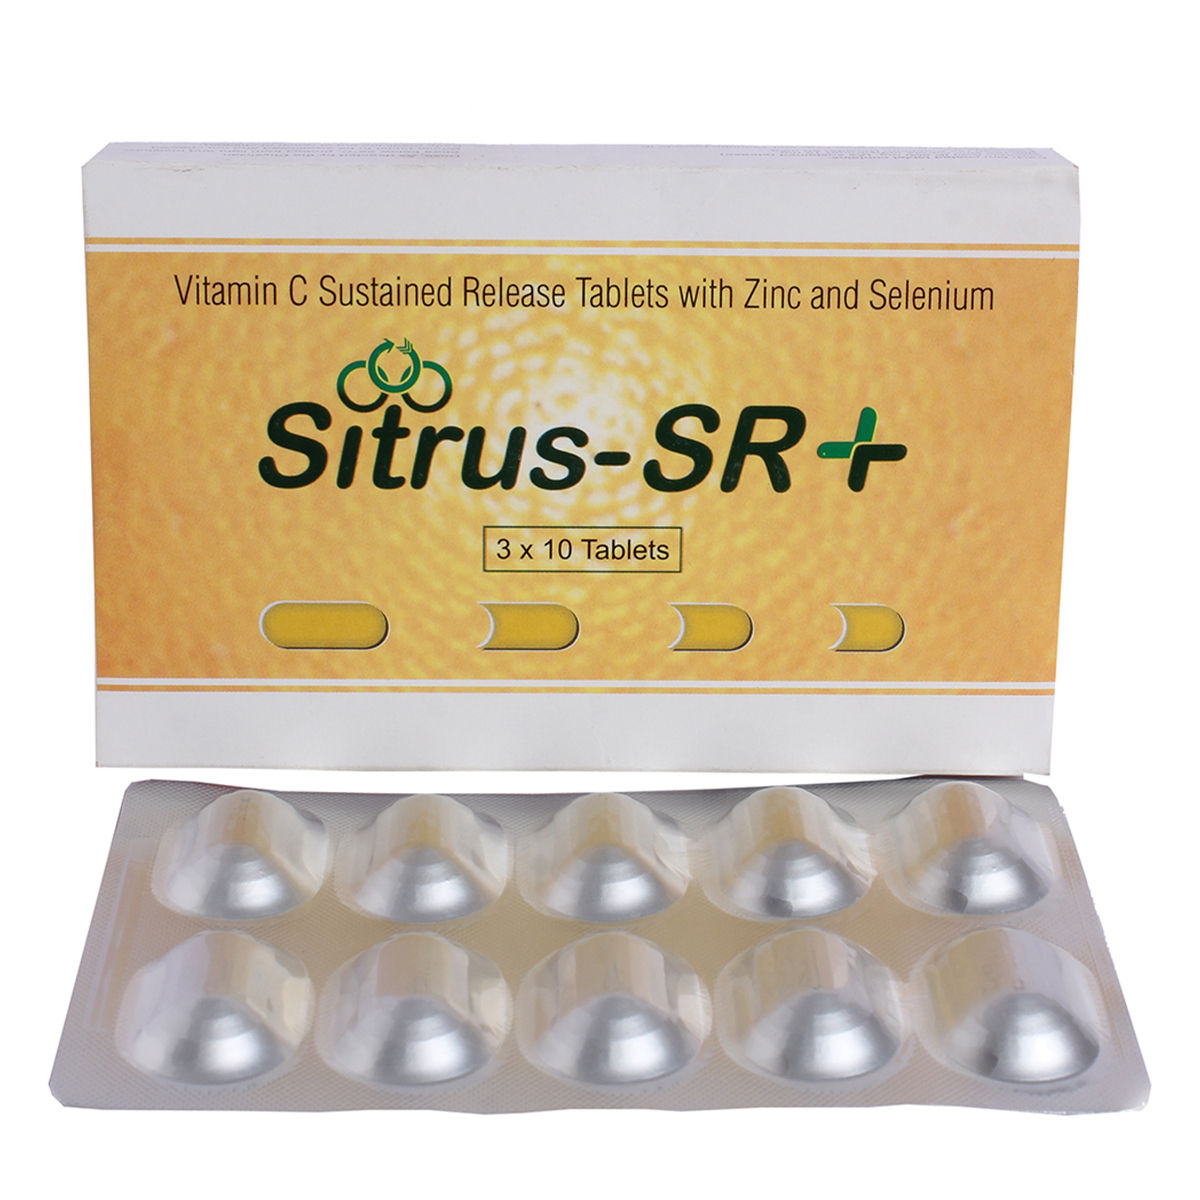 Sitrus-SR + Tablet 10's, Pack of 10 TABLETS